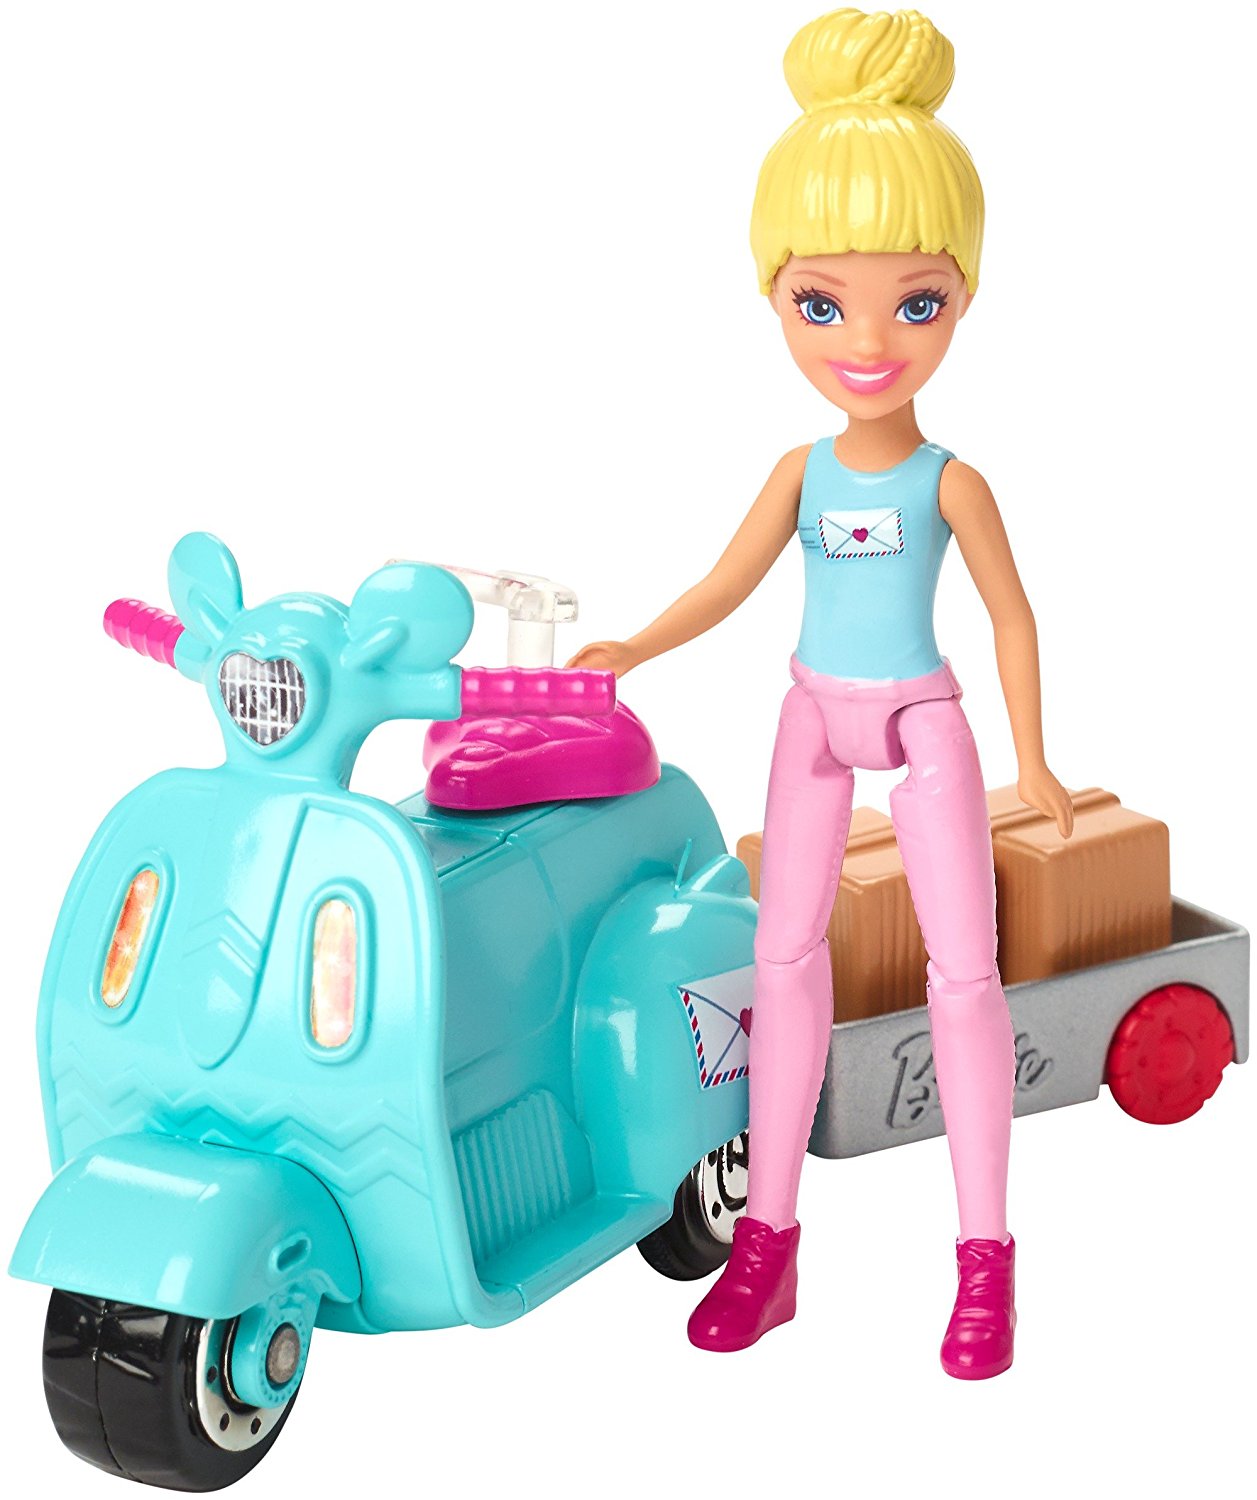 Игрушка из серии Барби в движении - Игровой набор Почта  